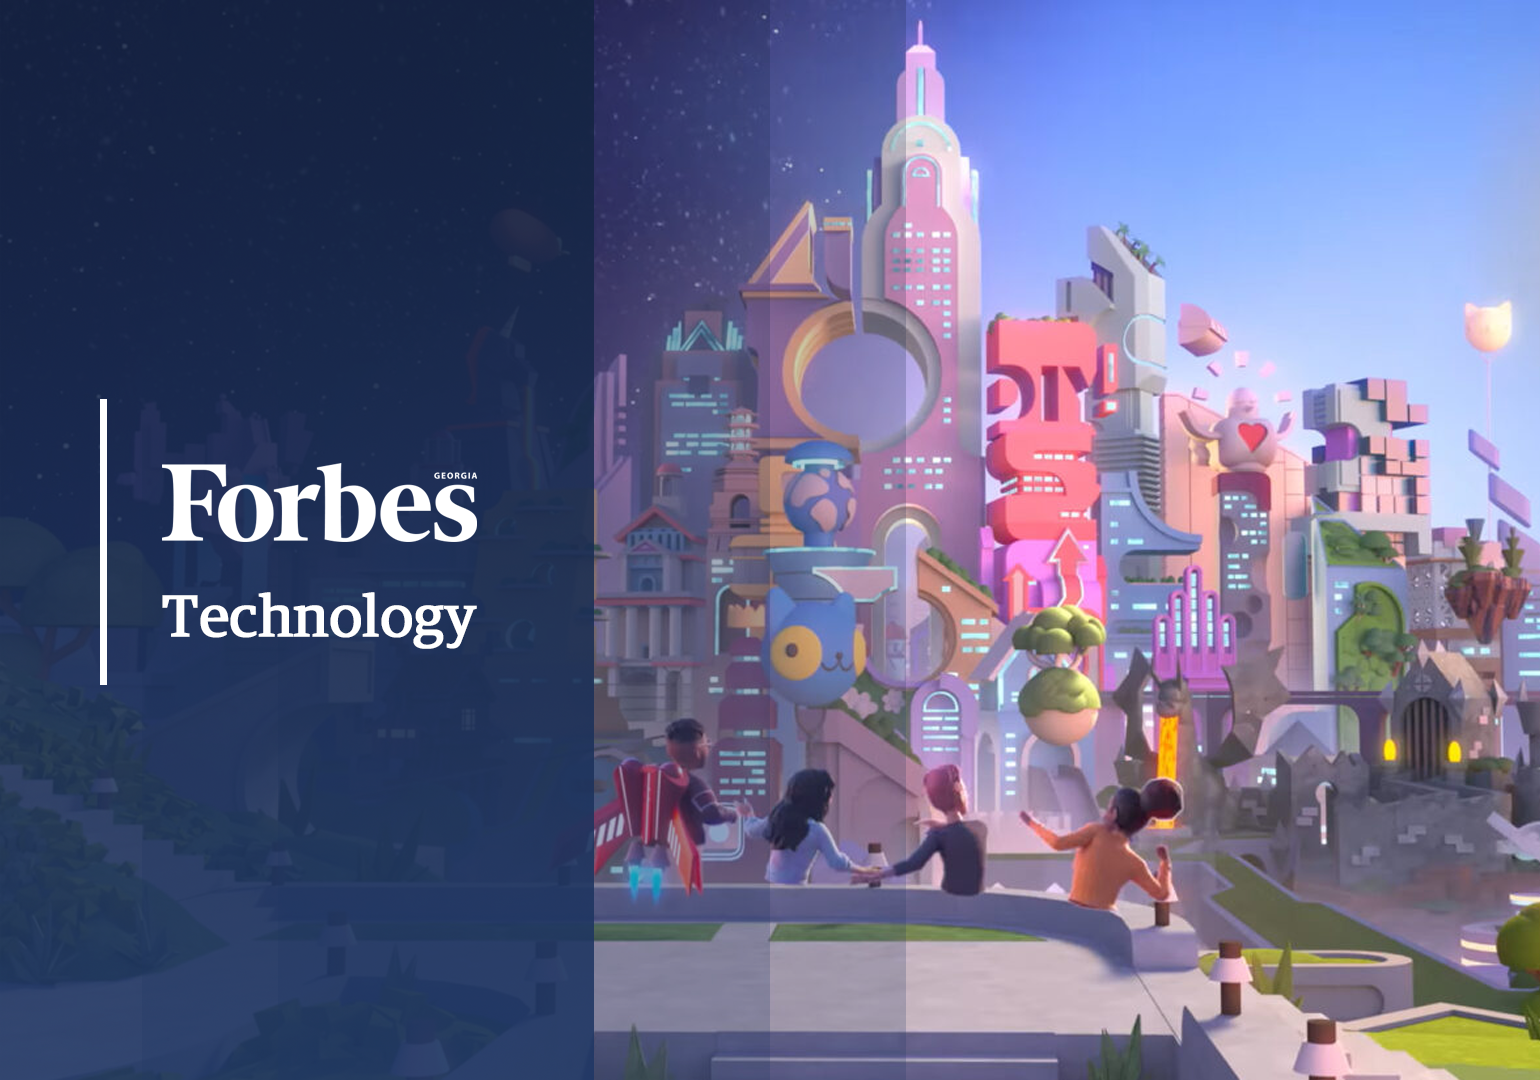 Forbes Tech: გასული კვირის მთავარი ტექნოლოგიური სიახლეები